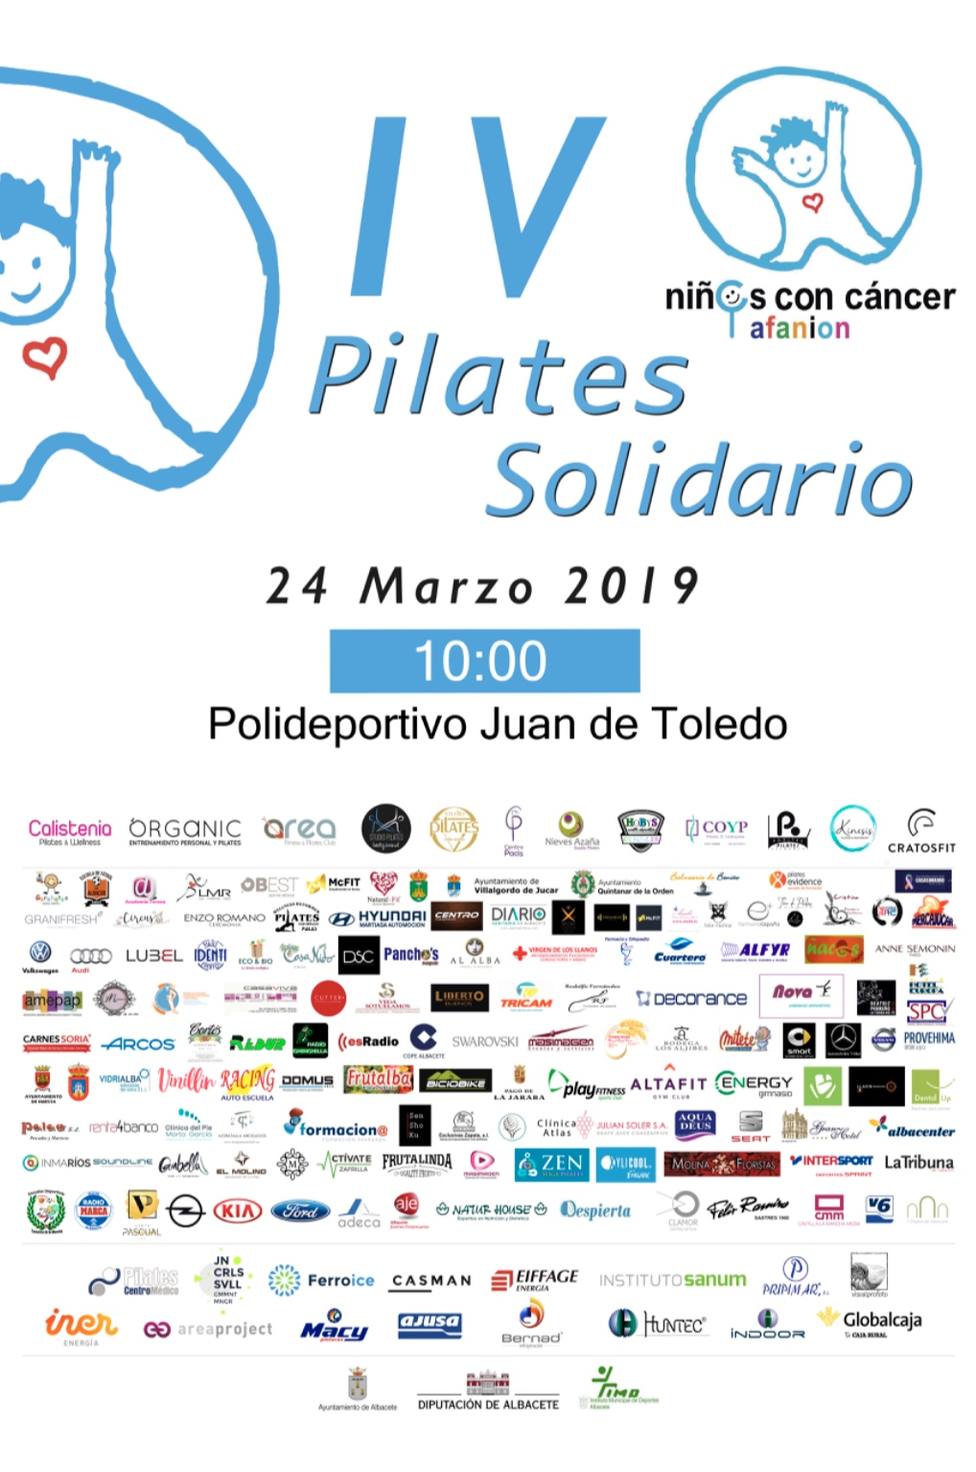 Pilates Solidario a beneficio de AFANION